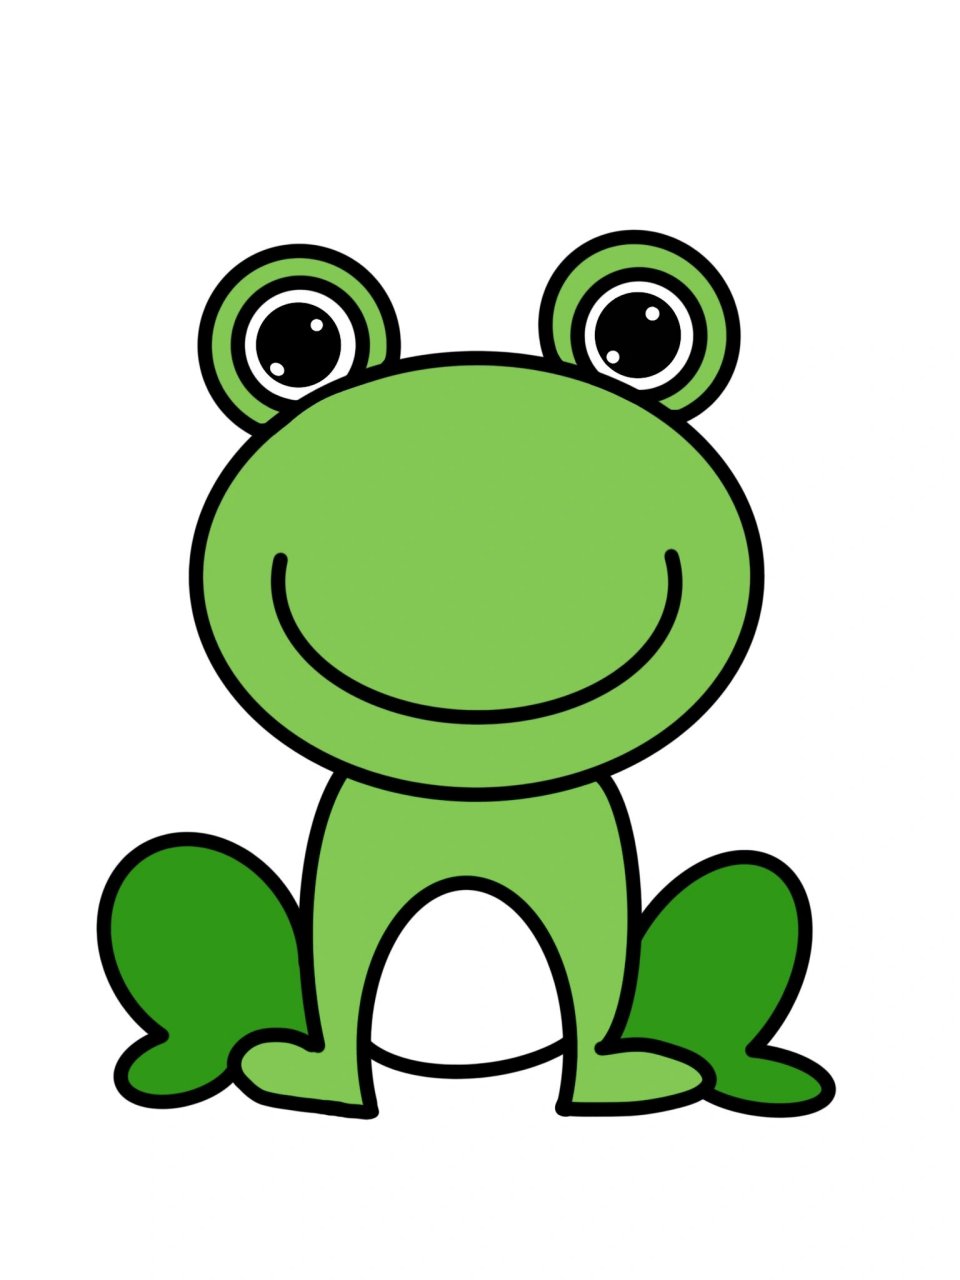 小青蛙头饰简笔画图片